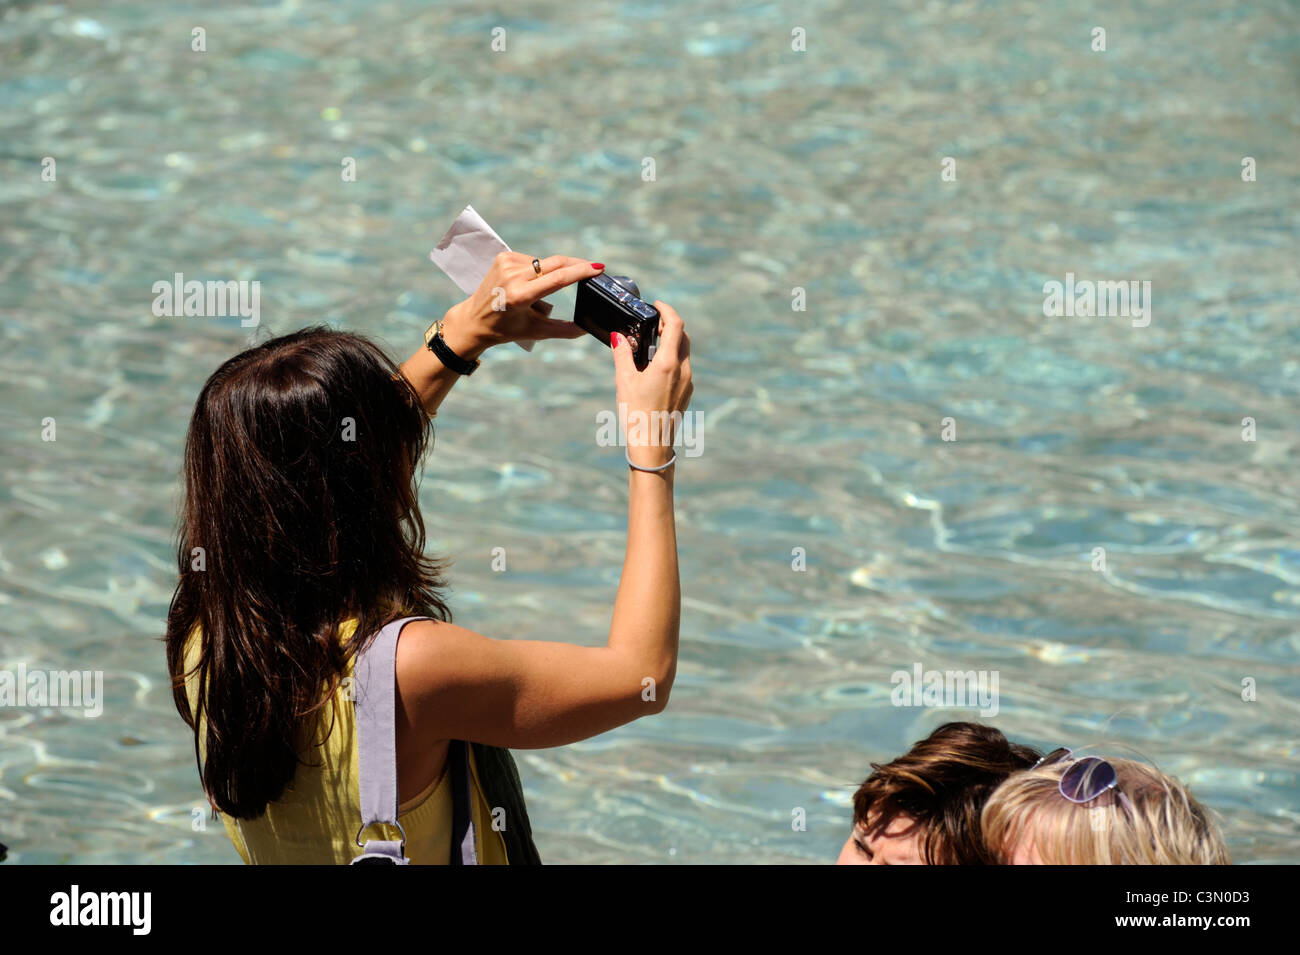 Italia, Roma, la fontana de Trevi, turista tomando fotos Foto de stock